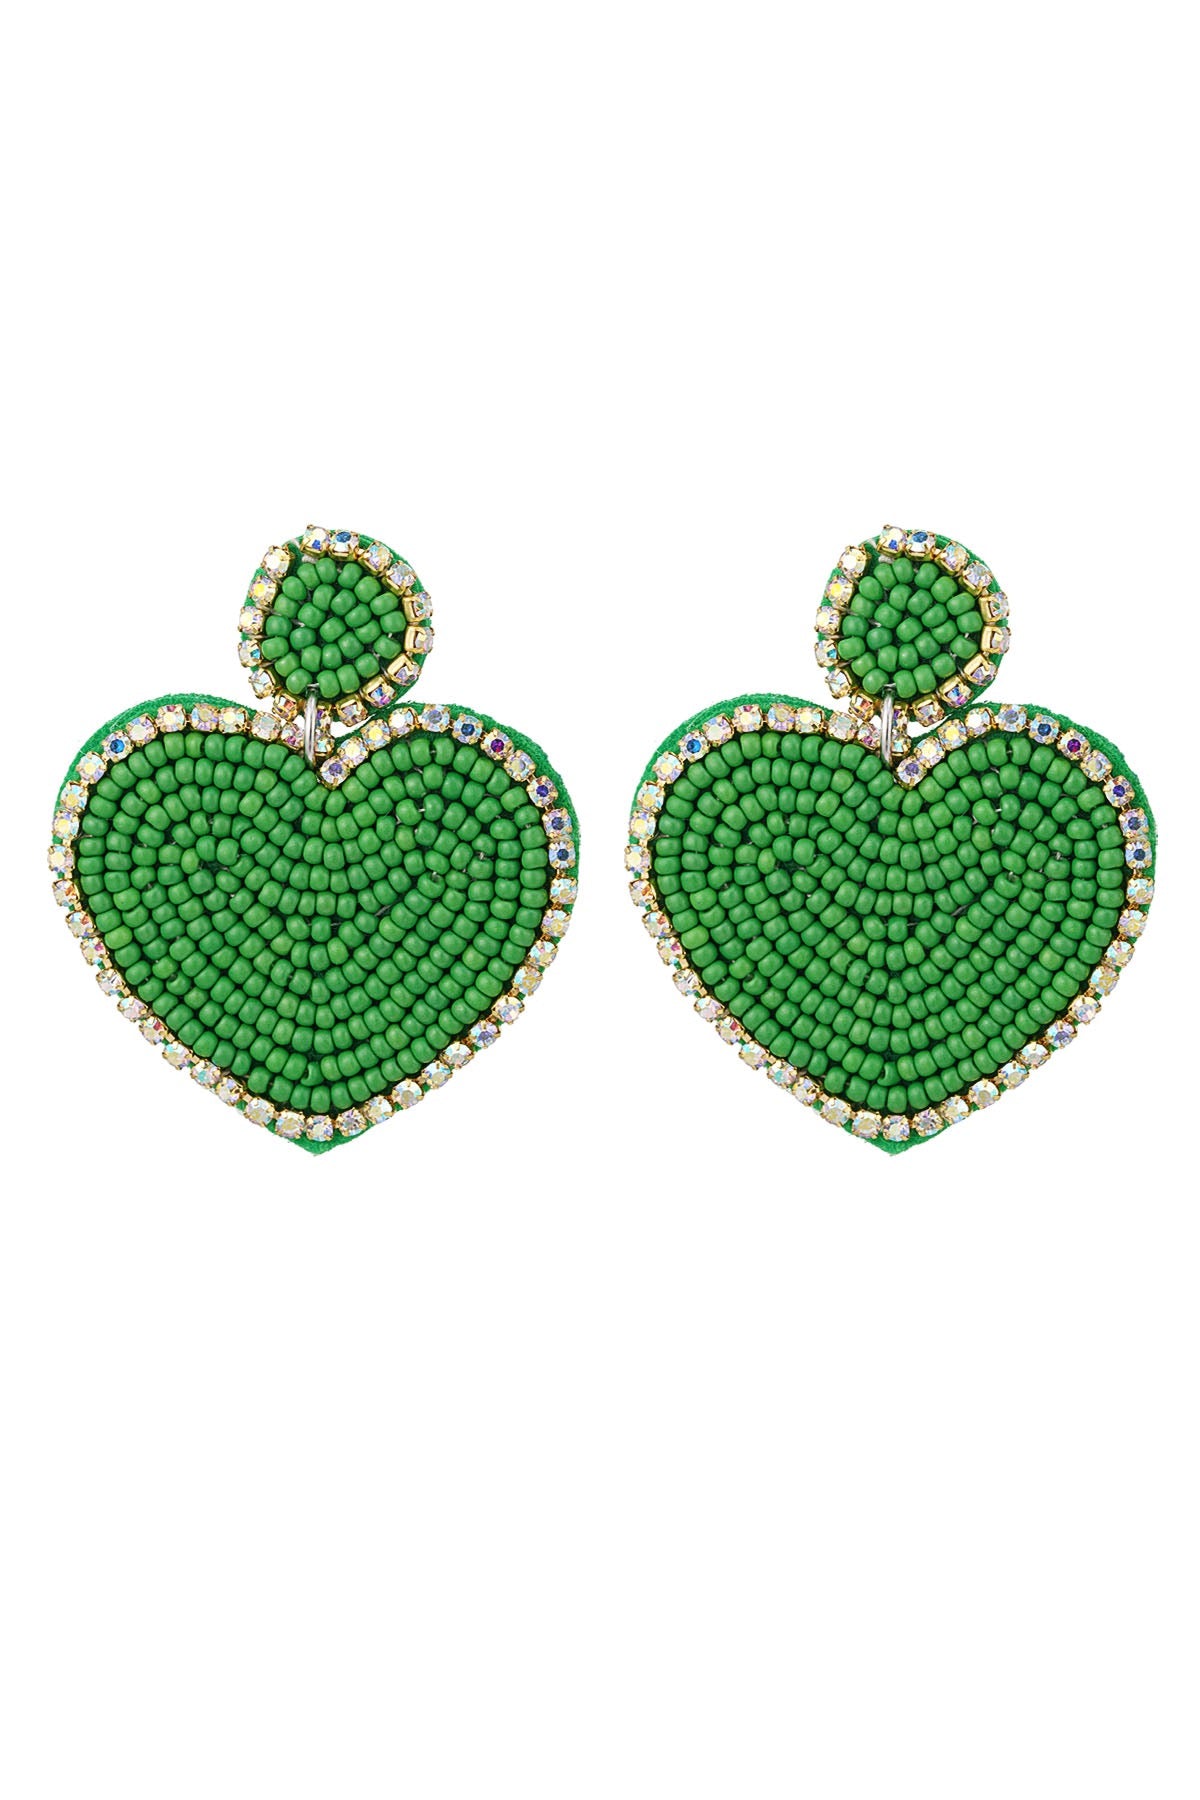 ‘GREEN FAVORITE’ earrings